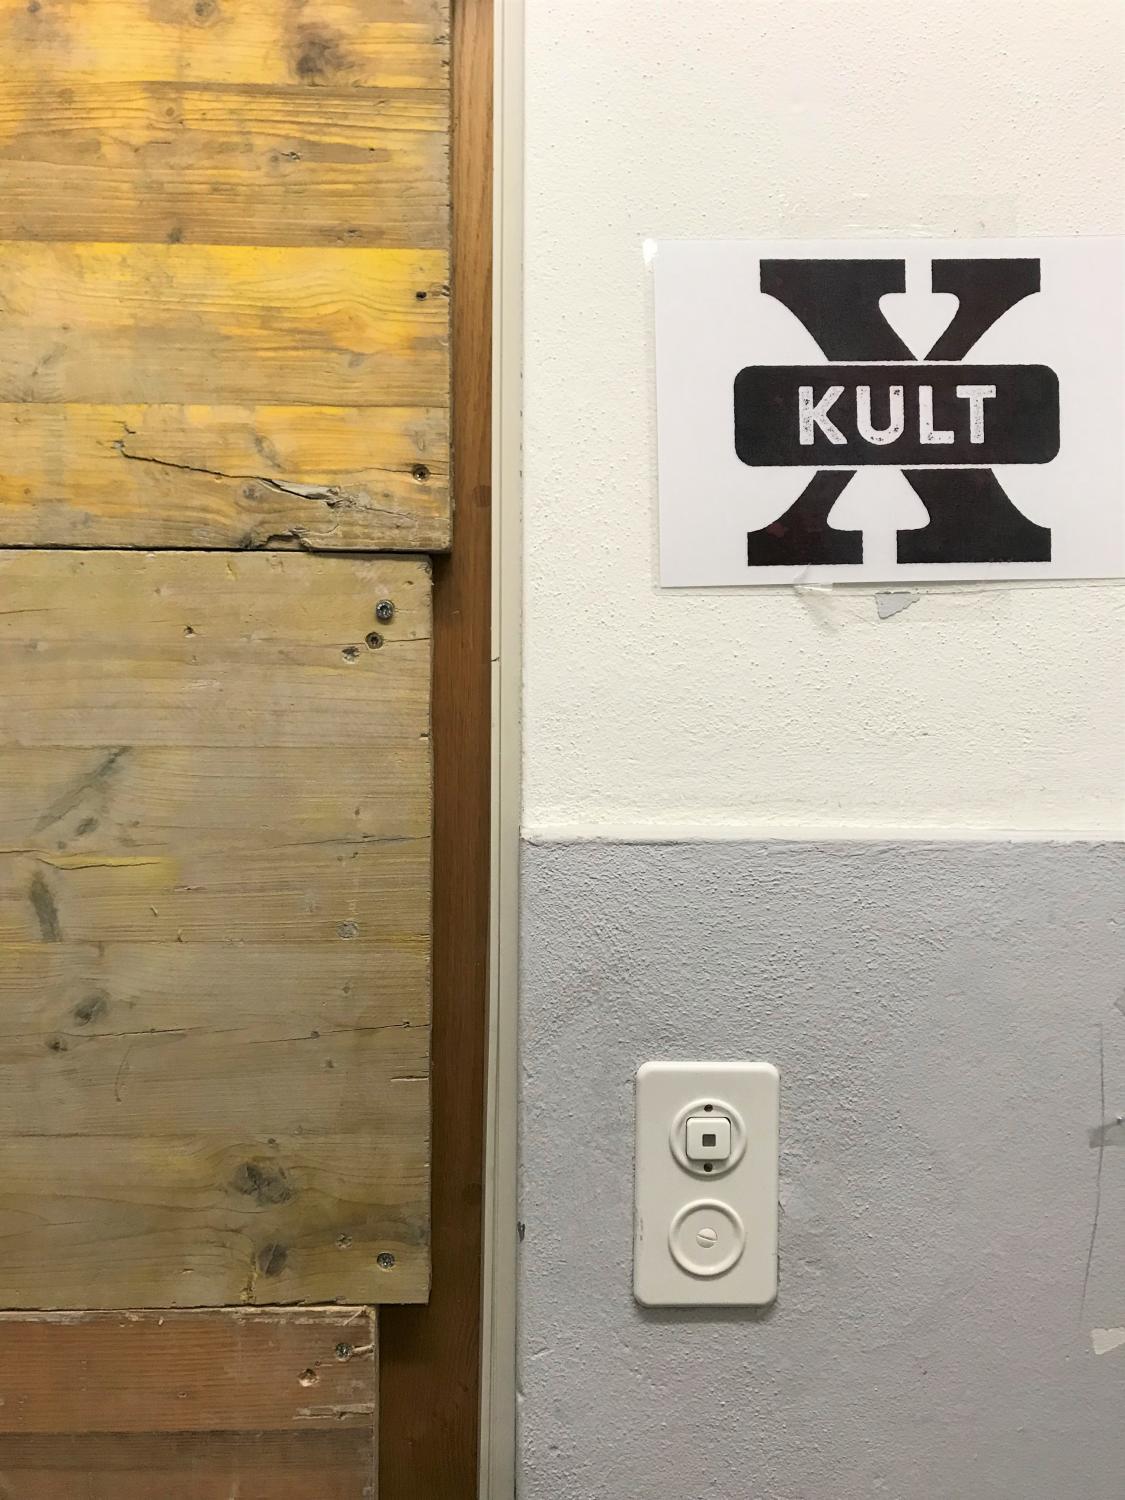 Kult-X in Kreuzlingen befindet sich in der Pilotphase.